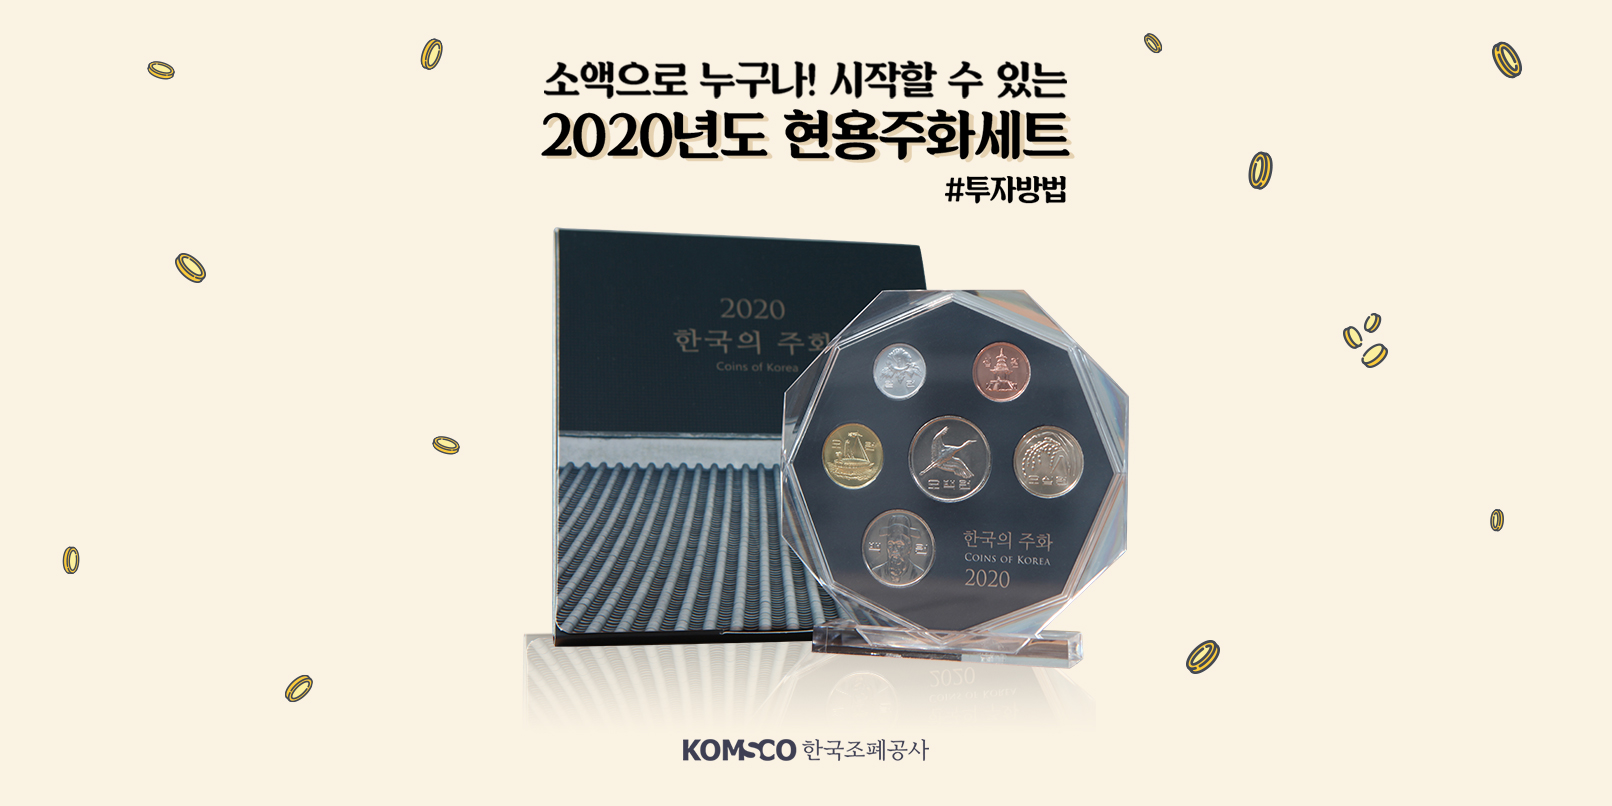 한국조폐공사 쇼핑몰 기념주화 손흥민 기념메달